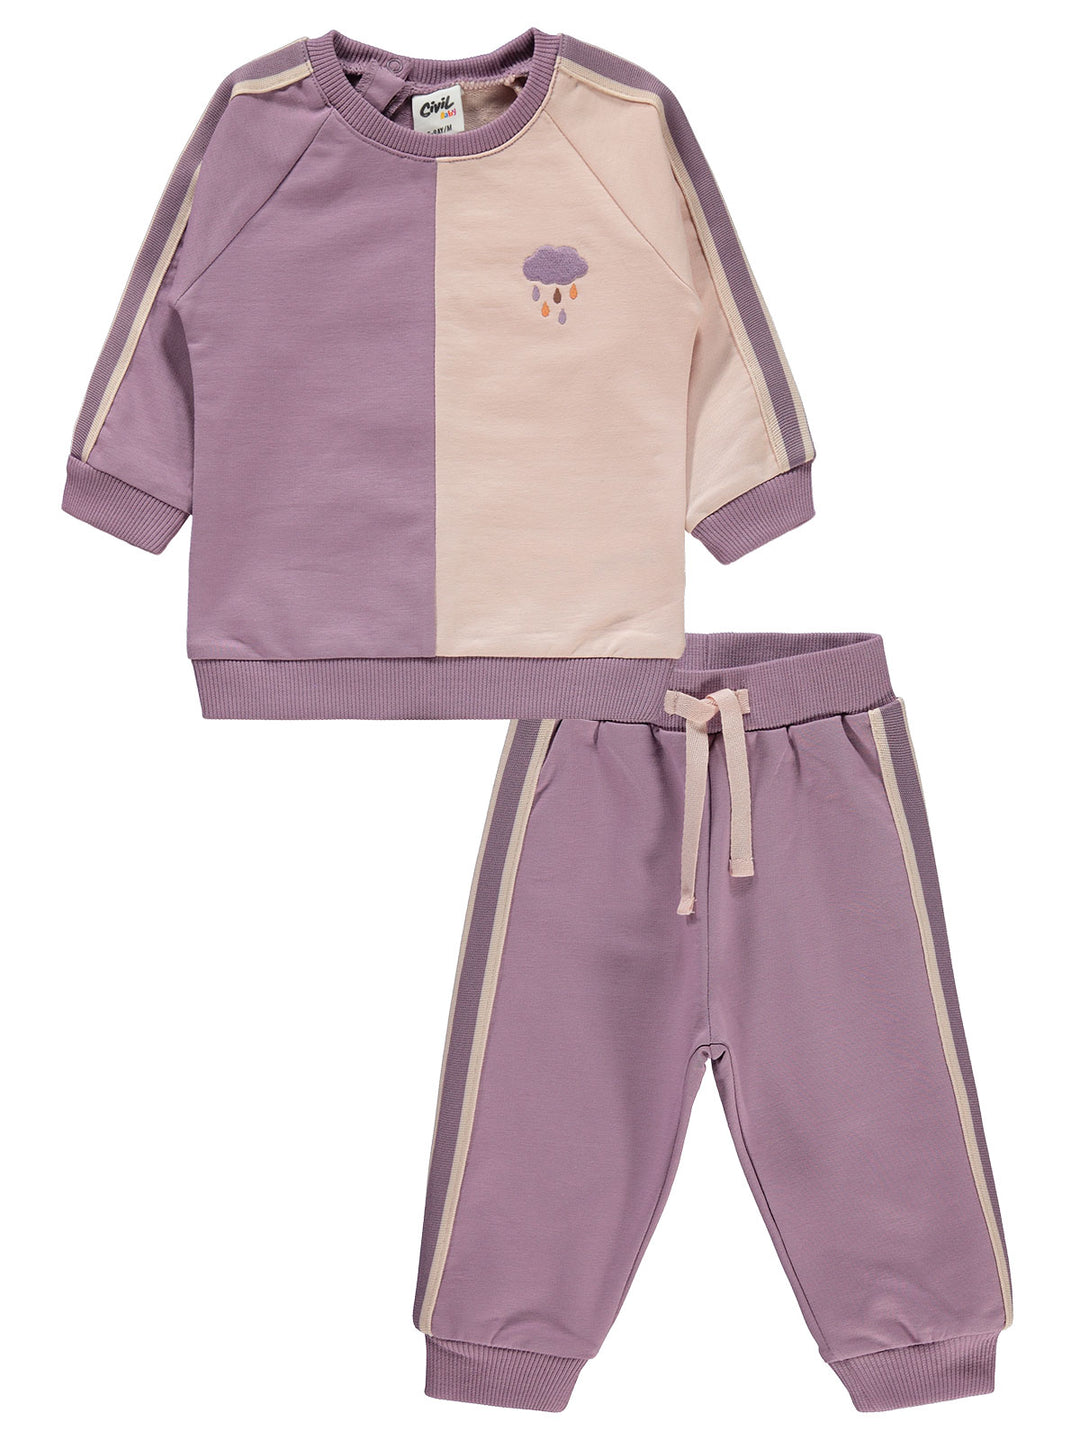 Civil Girls Pajama Suit Cotton L/S 2Pcs #E412 (W-22)